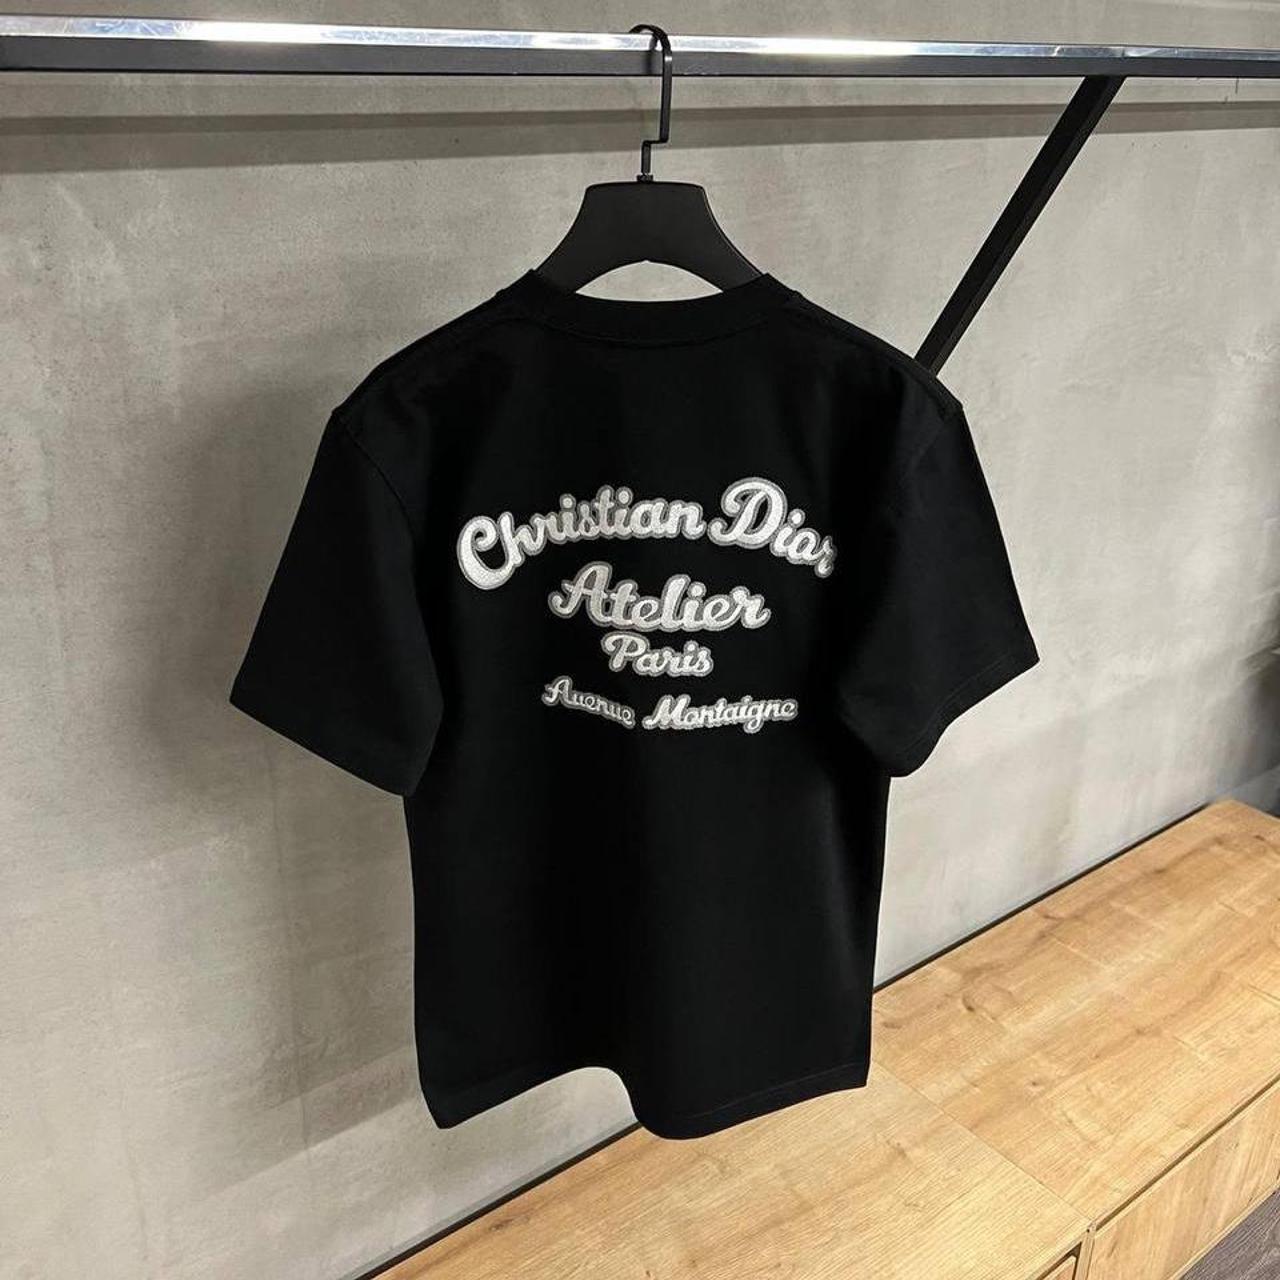 Christian Dior Men's T-shirt | Depop